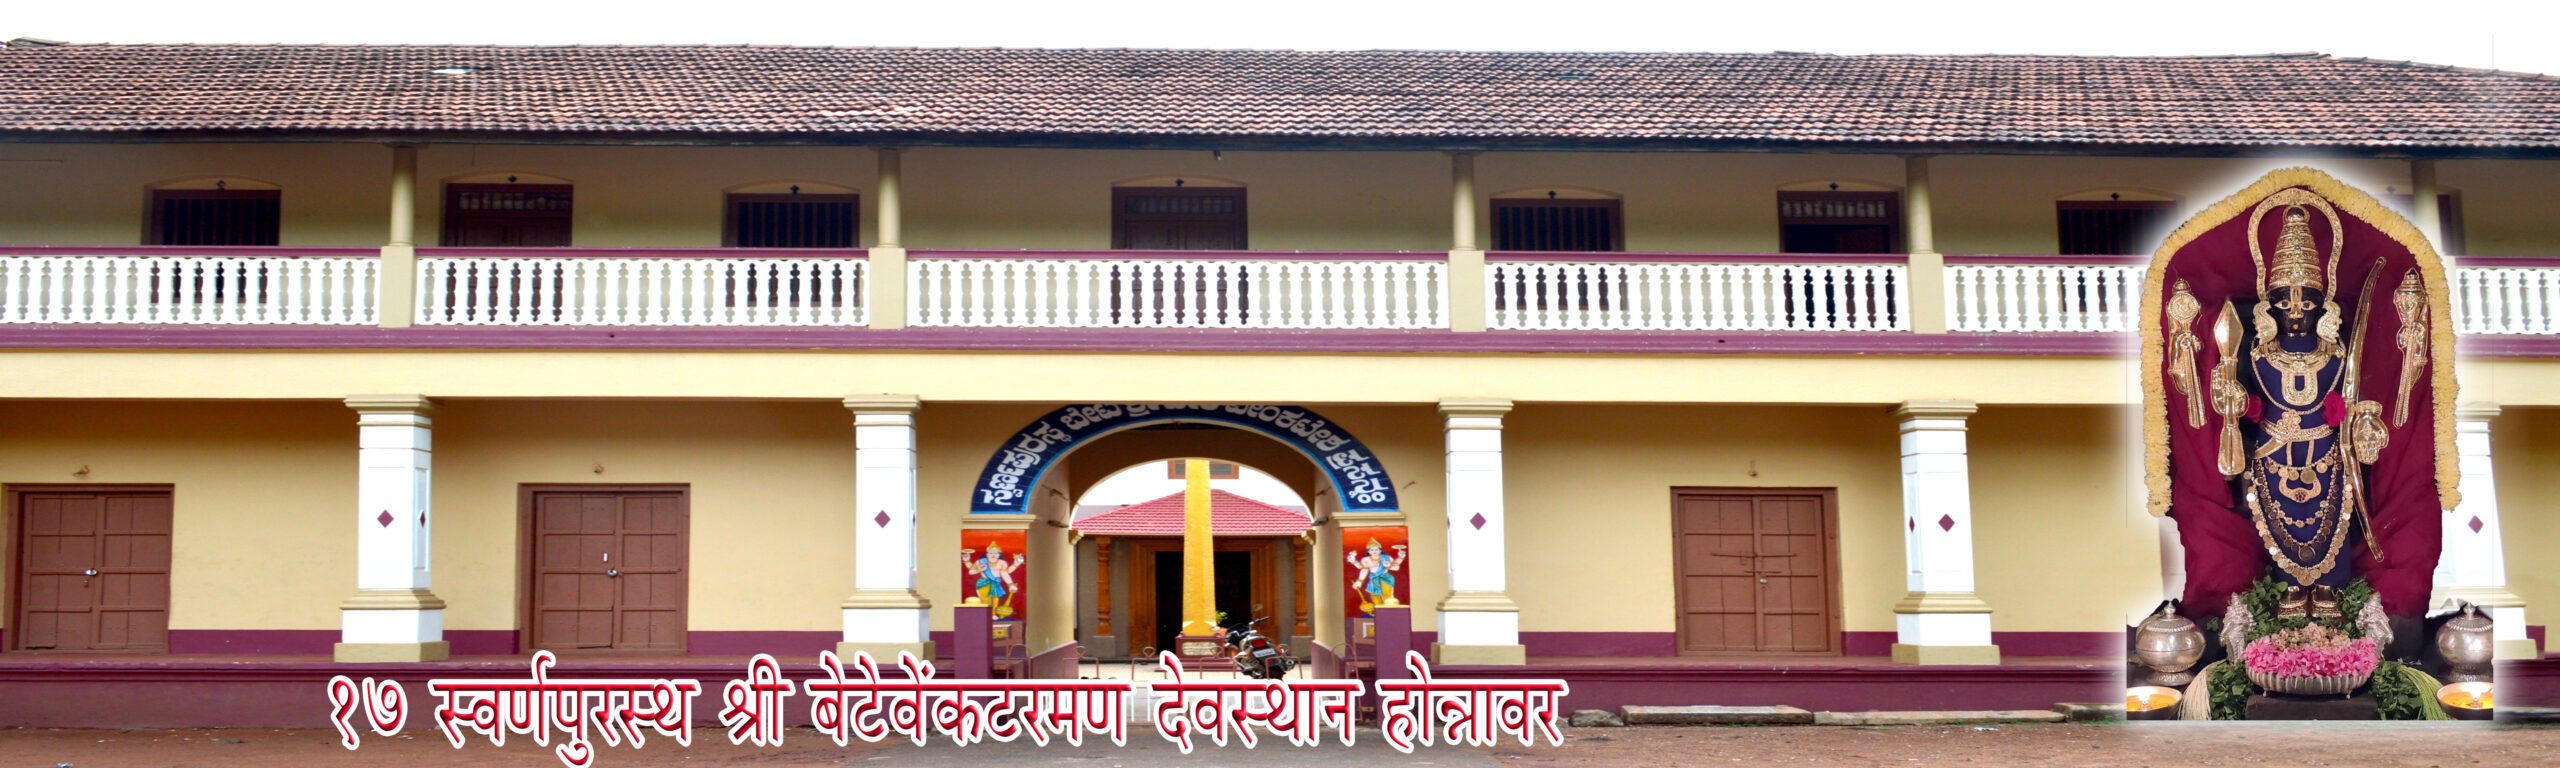 17 Honnavar Marathi